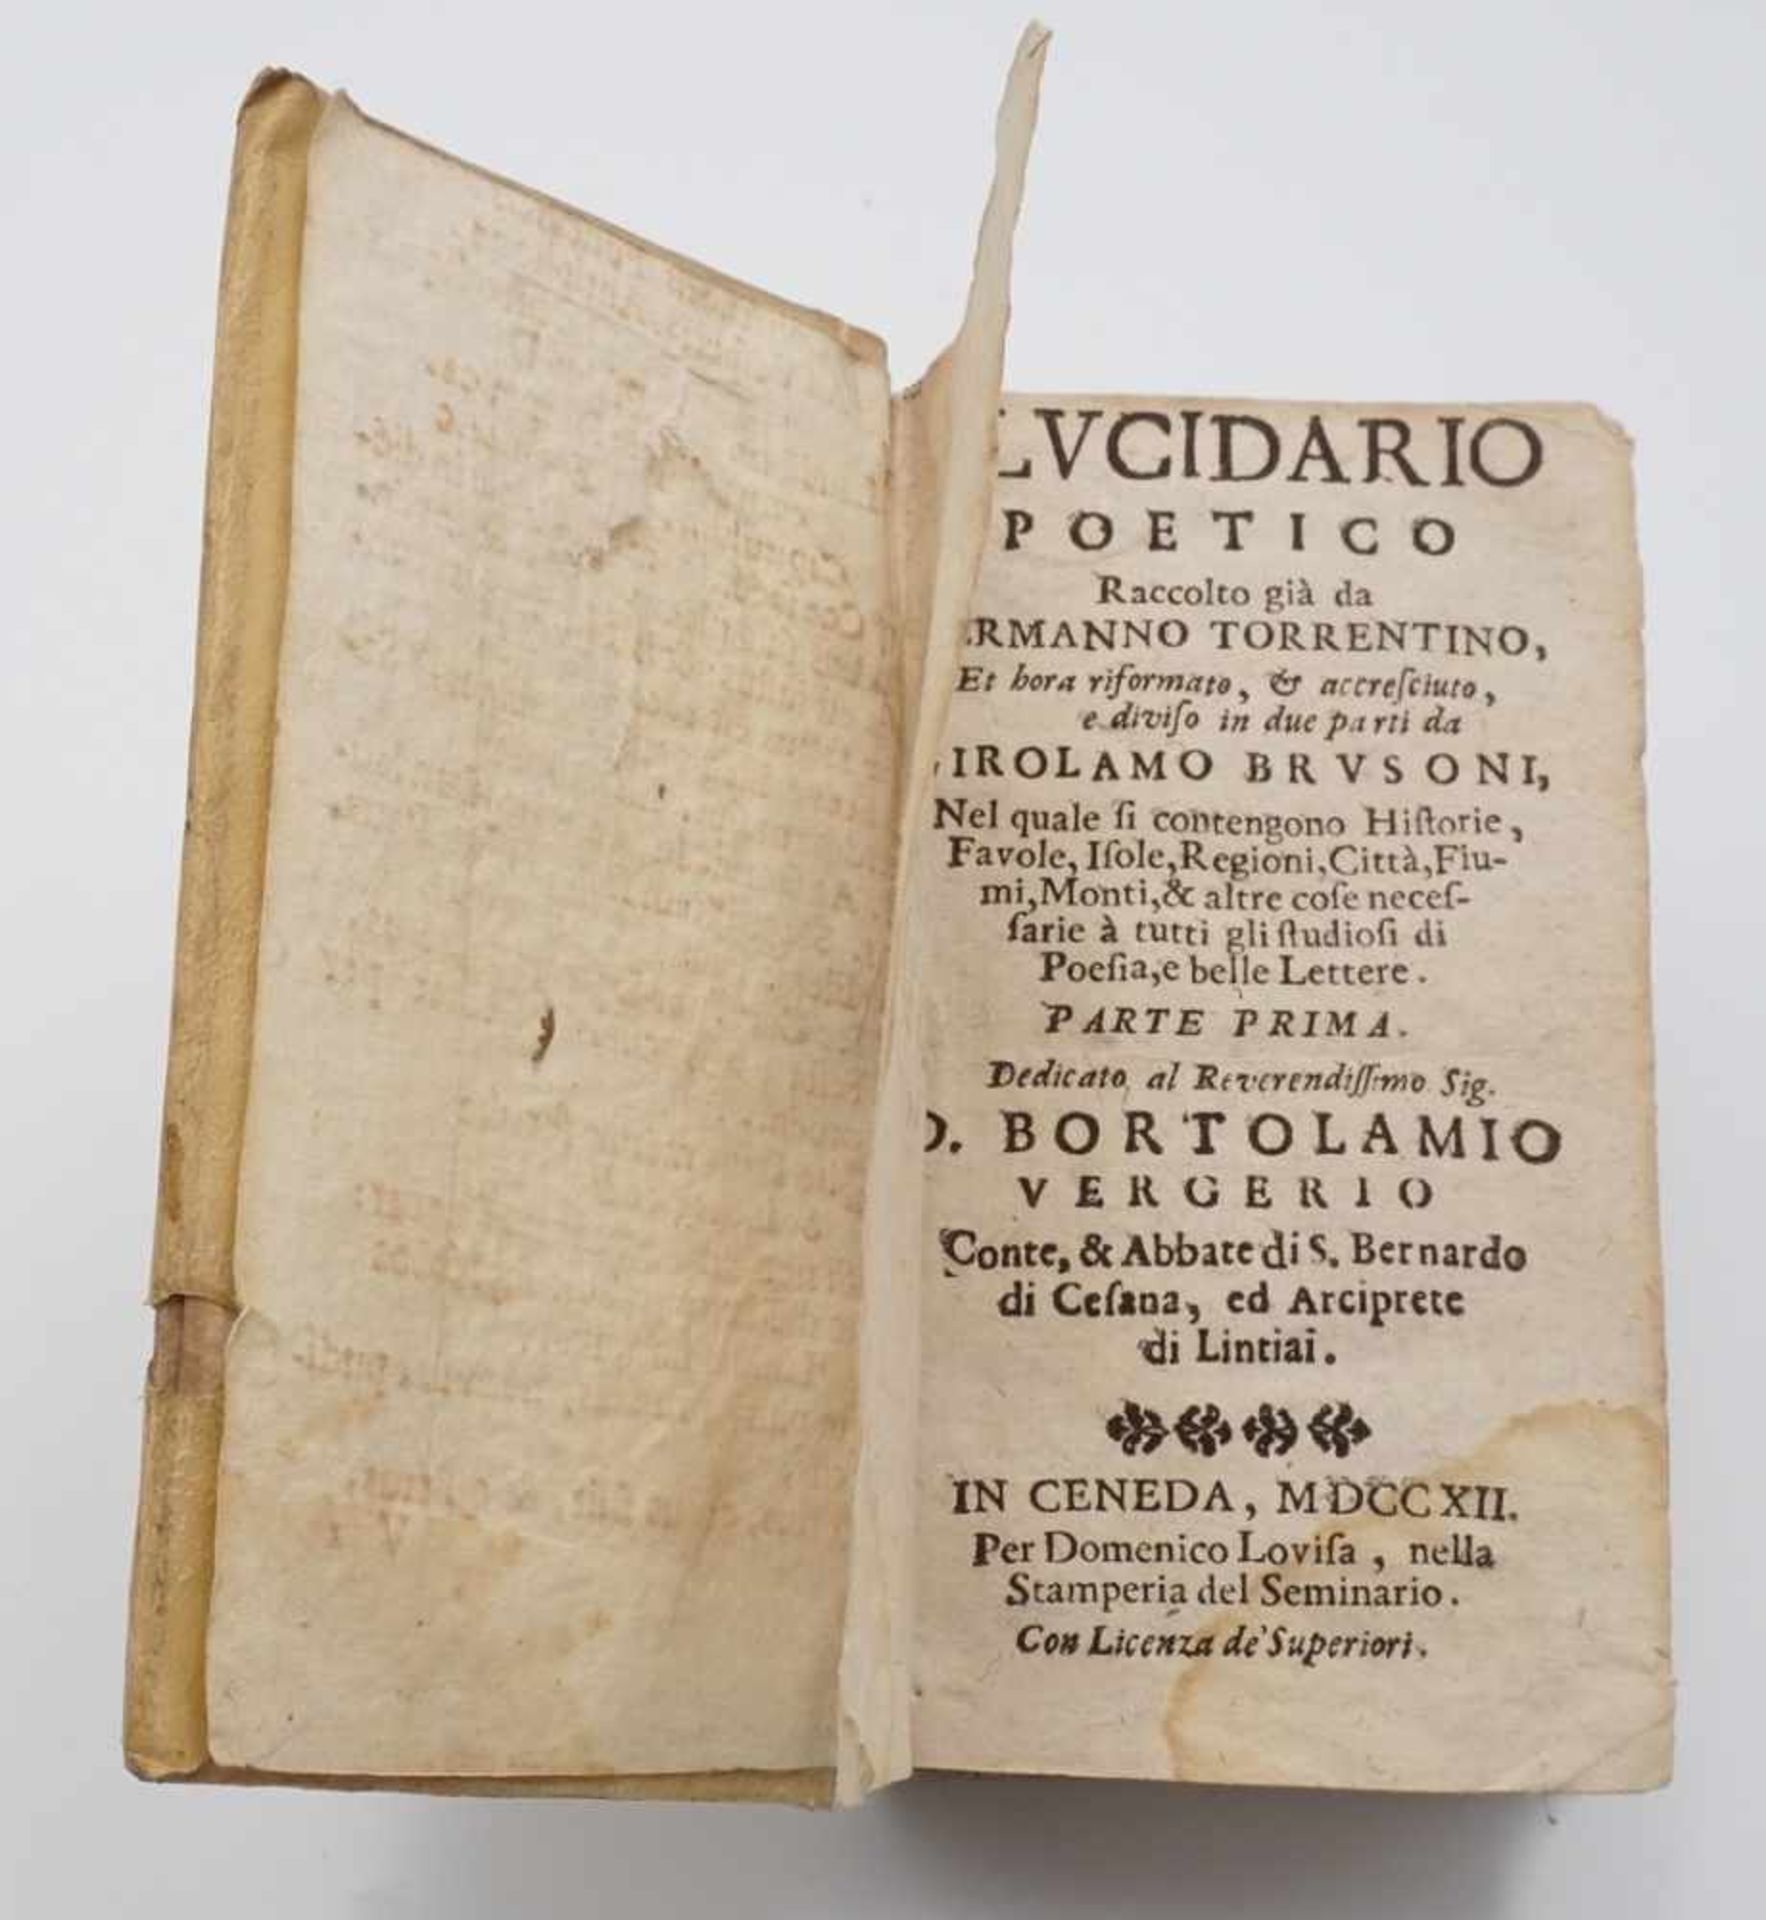 Hermanno Torrentino, "Elucidario Poetico"1712, ein italienisches Sammelwerk der Poesie,